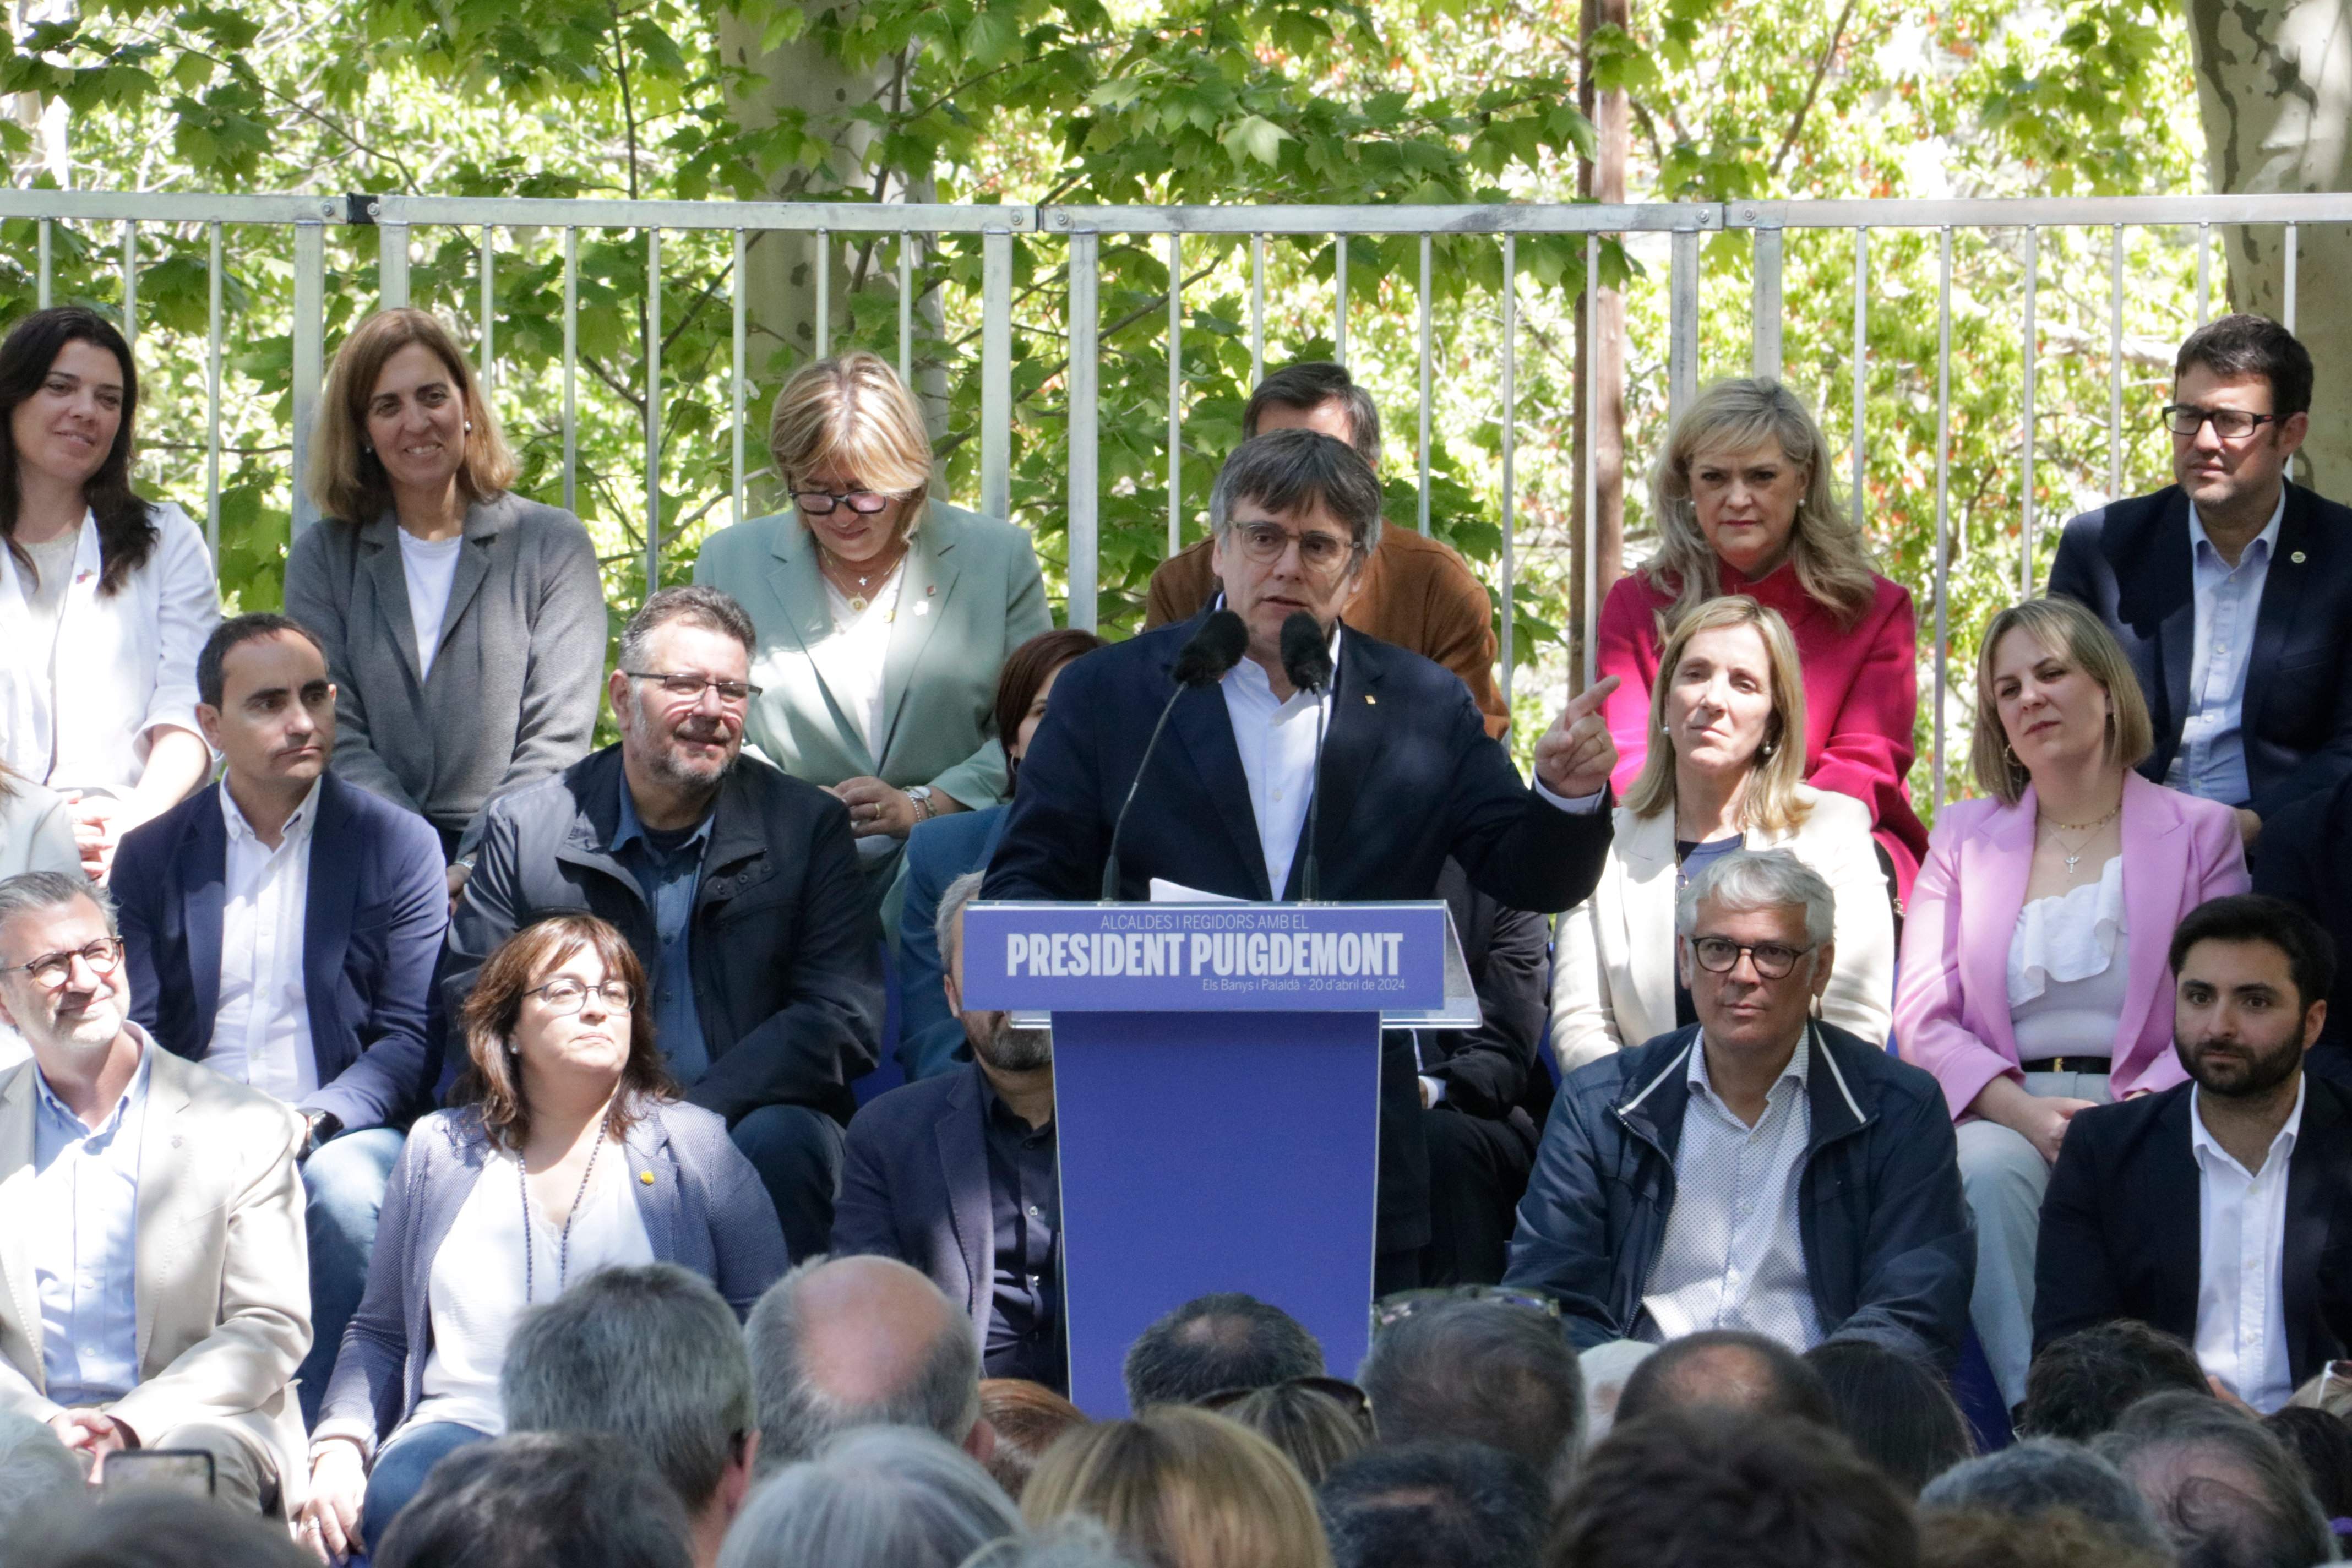 El manifest en suport de Puigdemont pel 12-M recull 5.000 firmes en menys d'una setmana